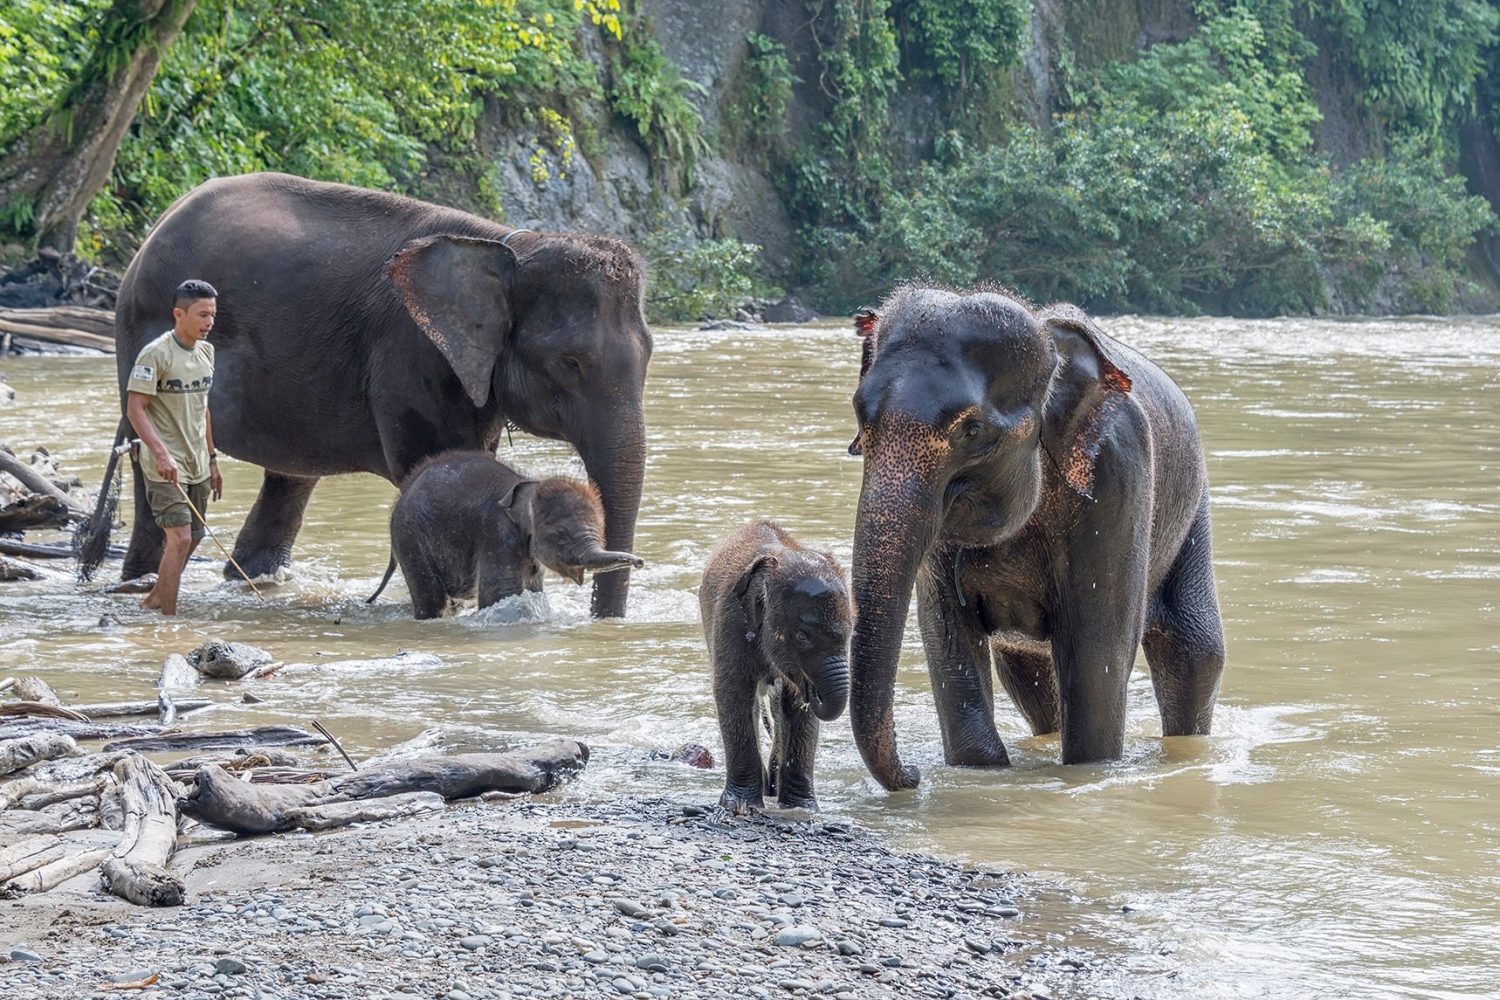 tangkahan elephants tour through Sumatra